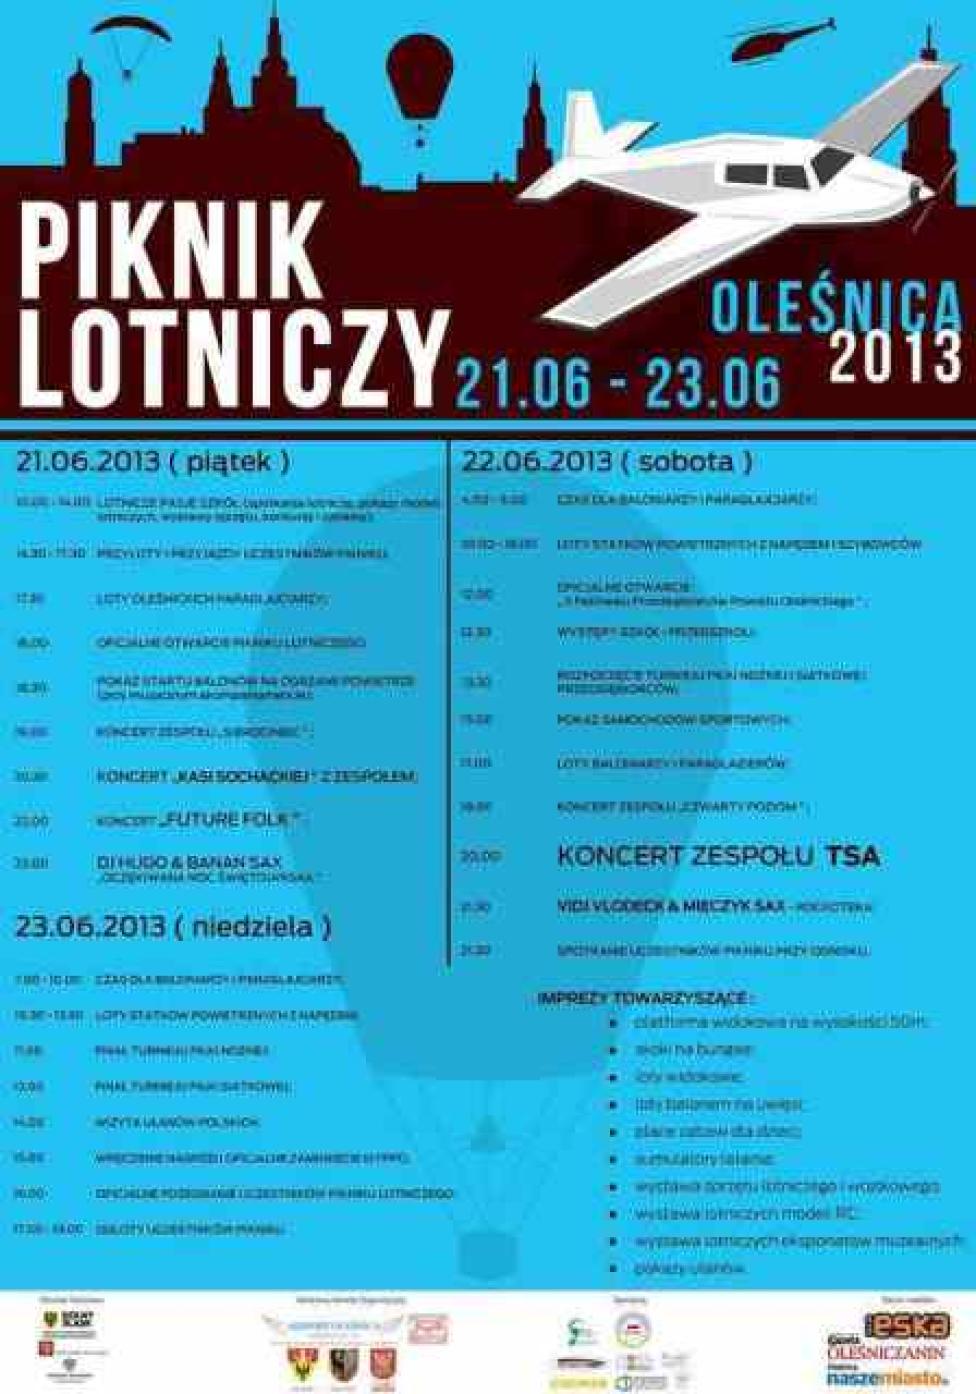 Piknik lotniczy w Oleśnicy - plakat